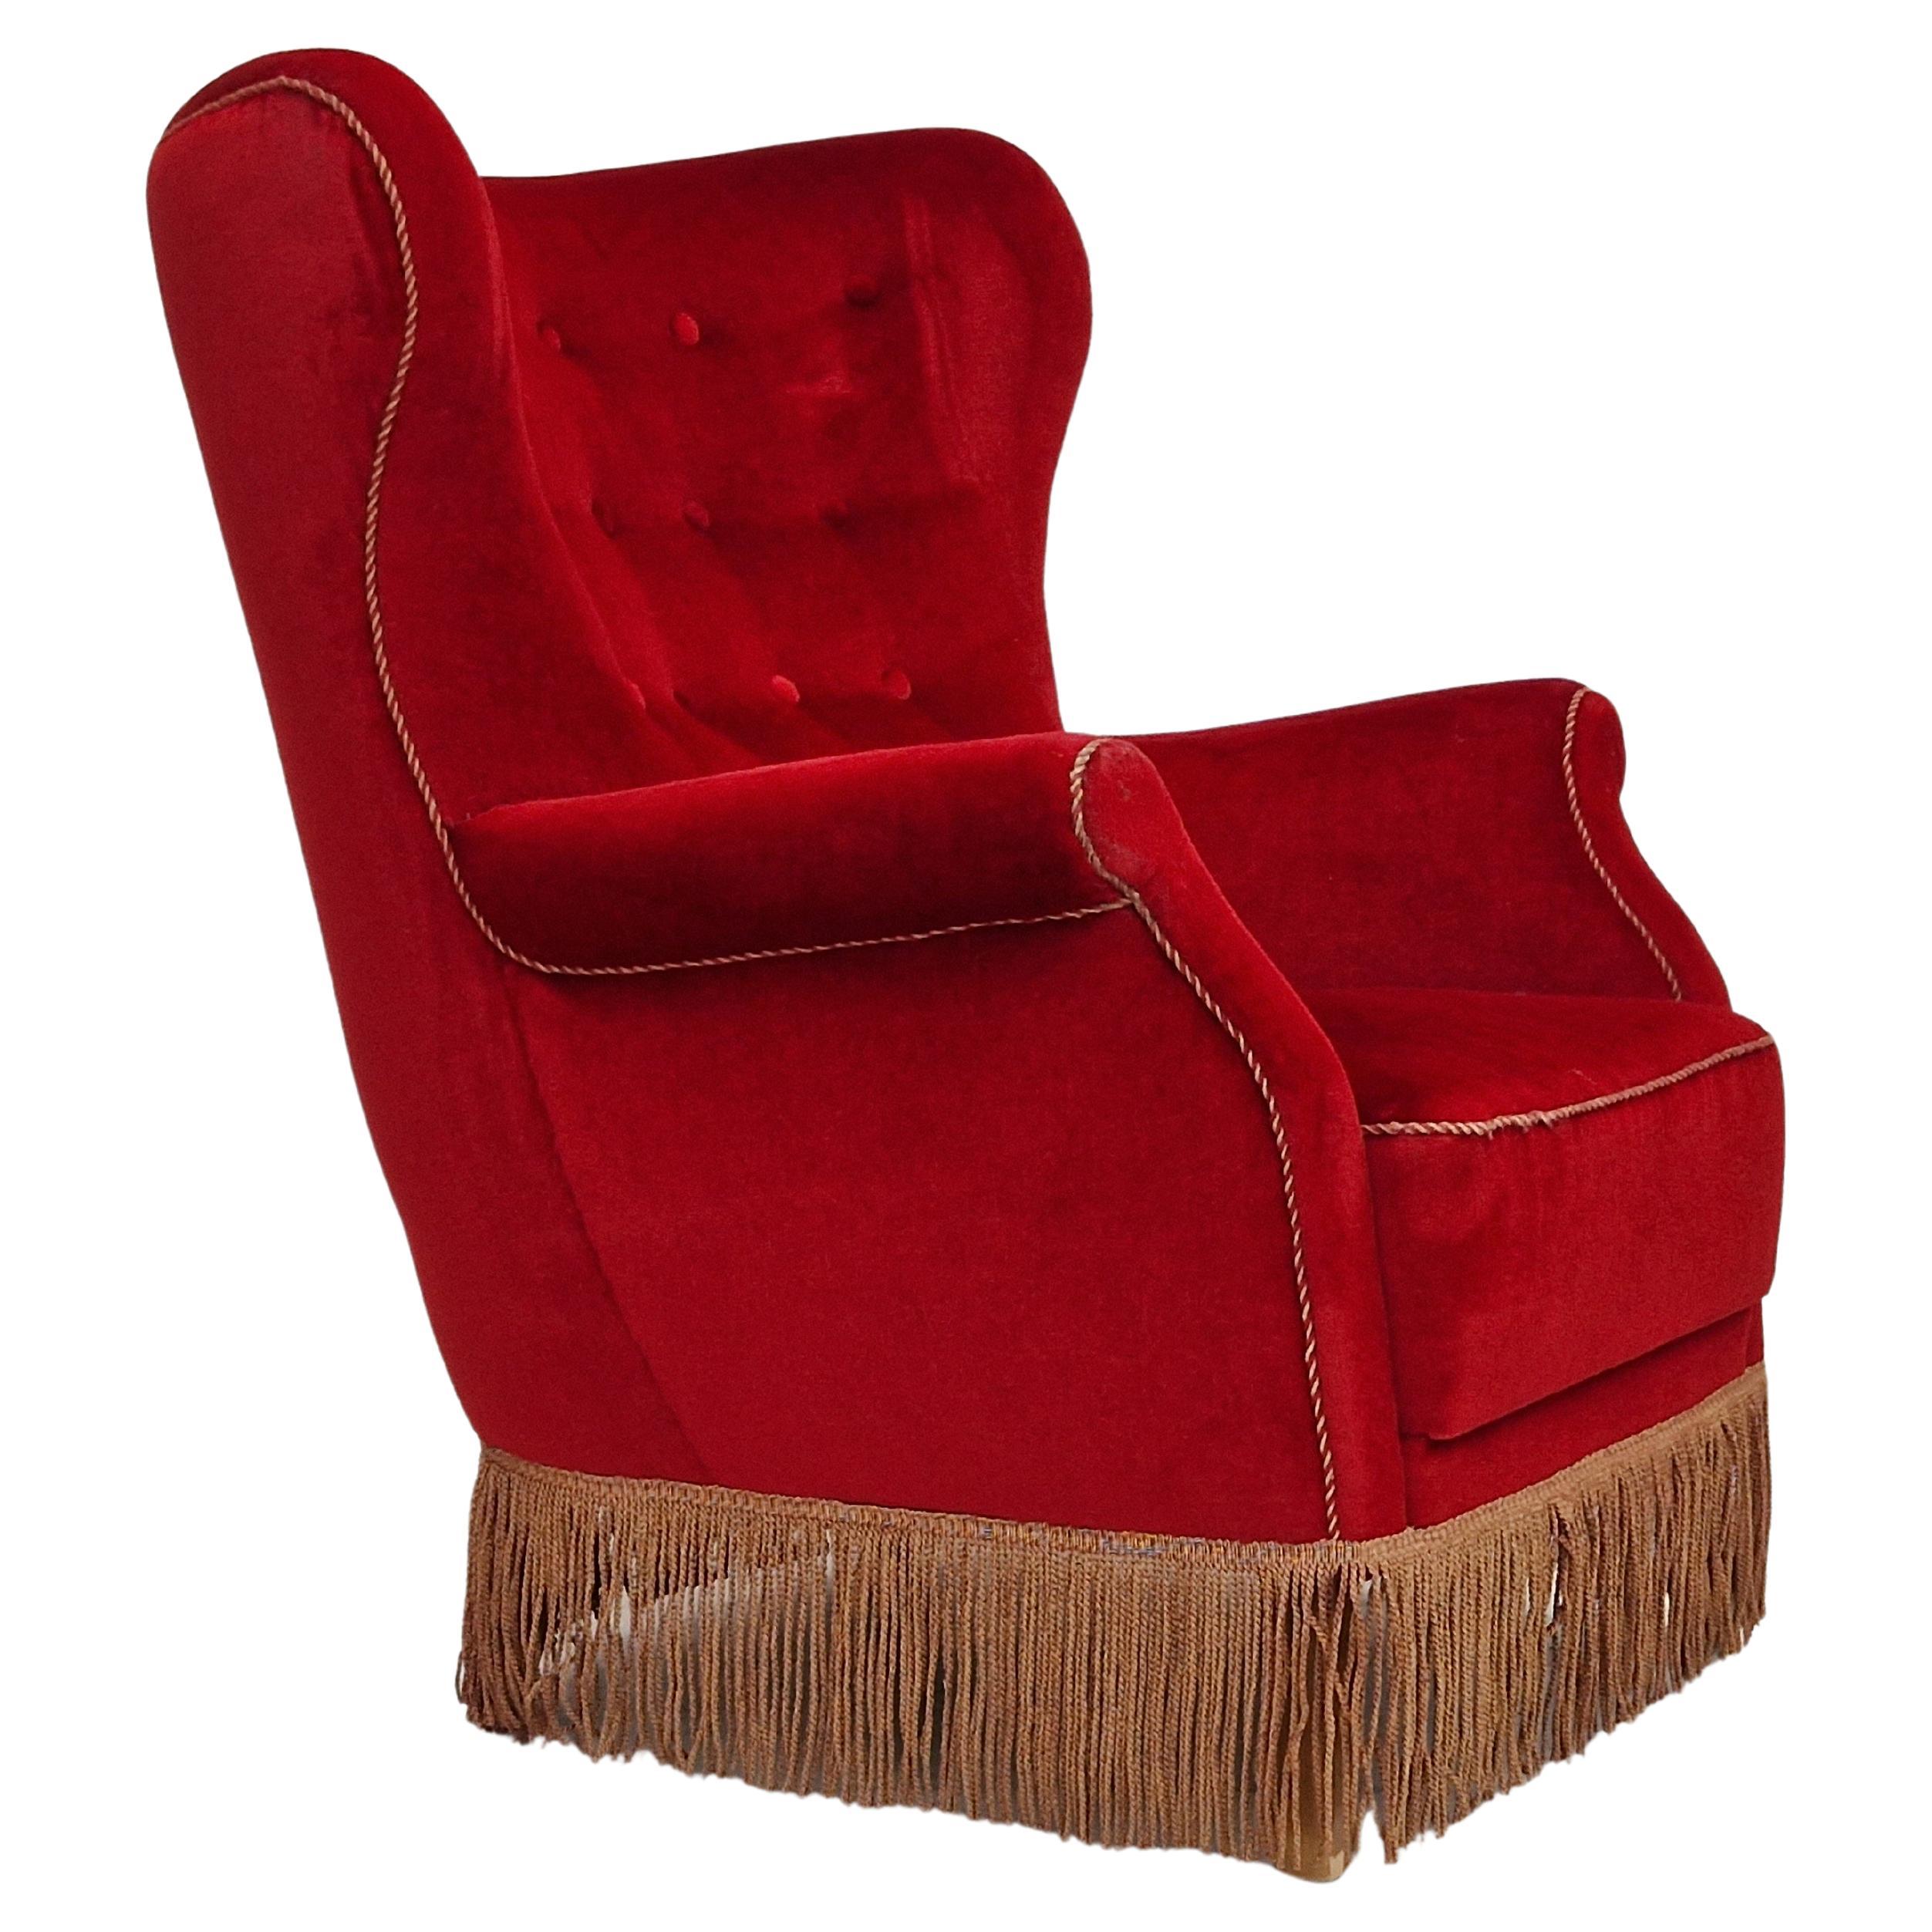 1960s, Danish Vintage Highback Armchair in Cherry-Red Velvet